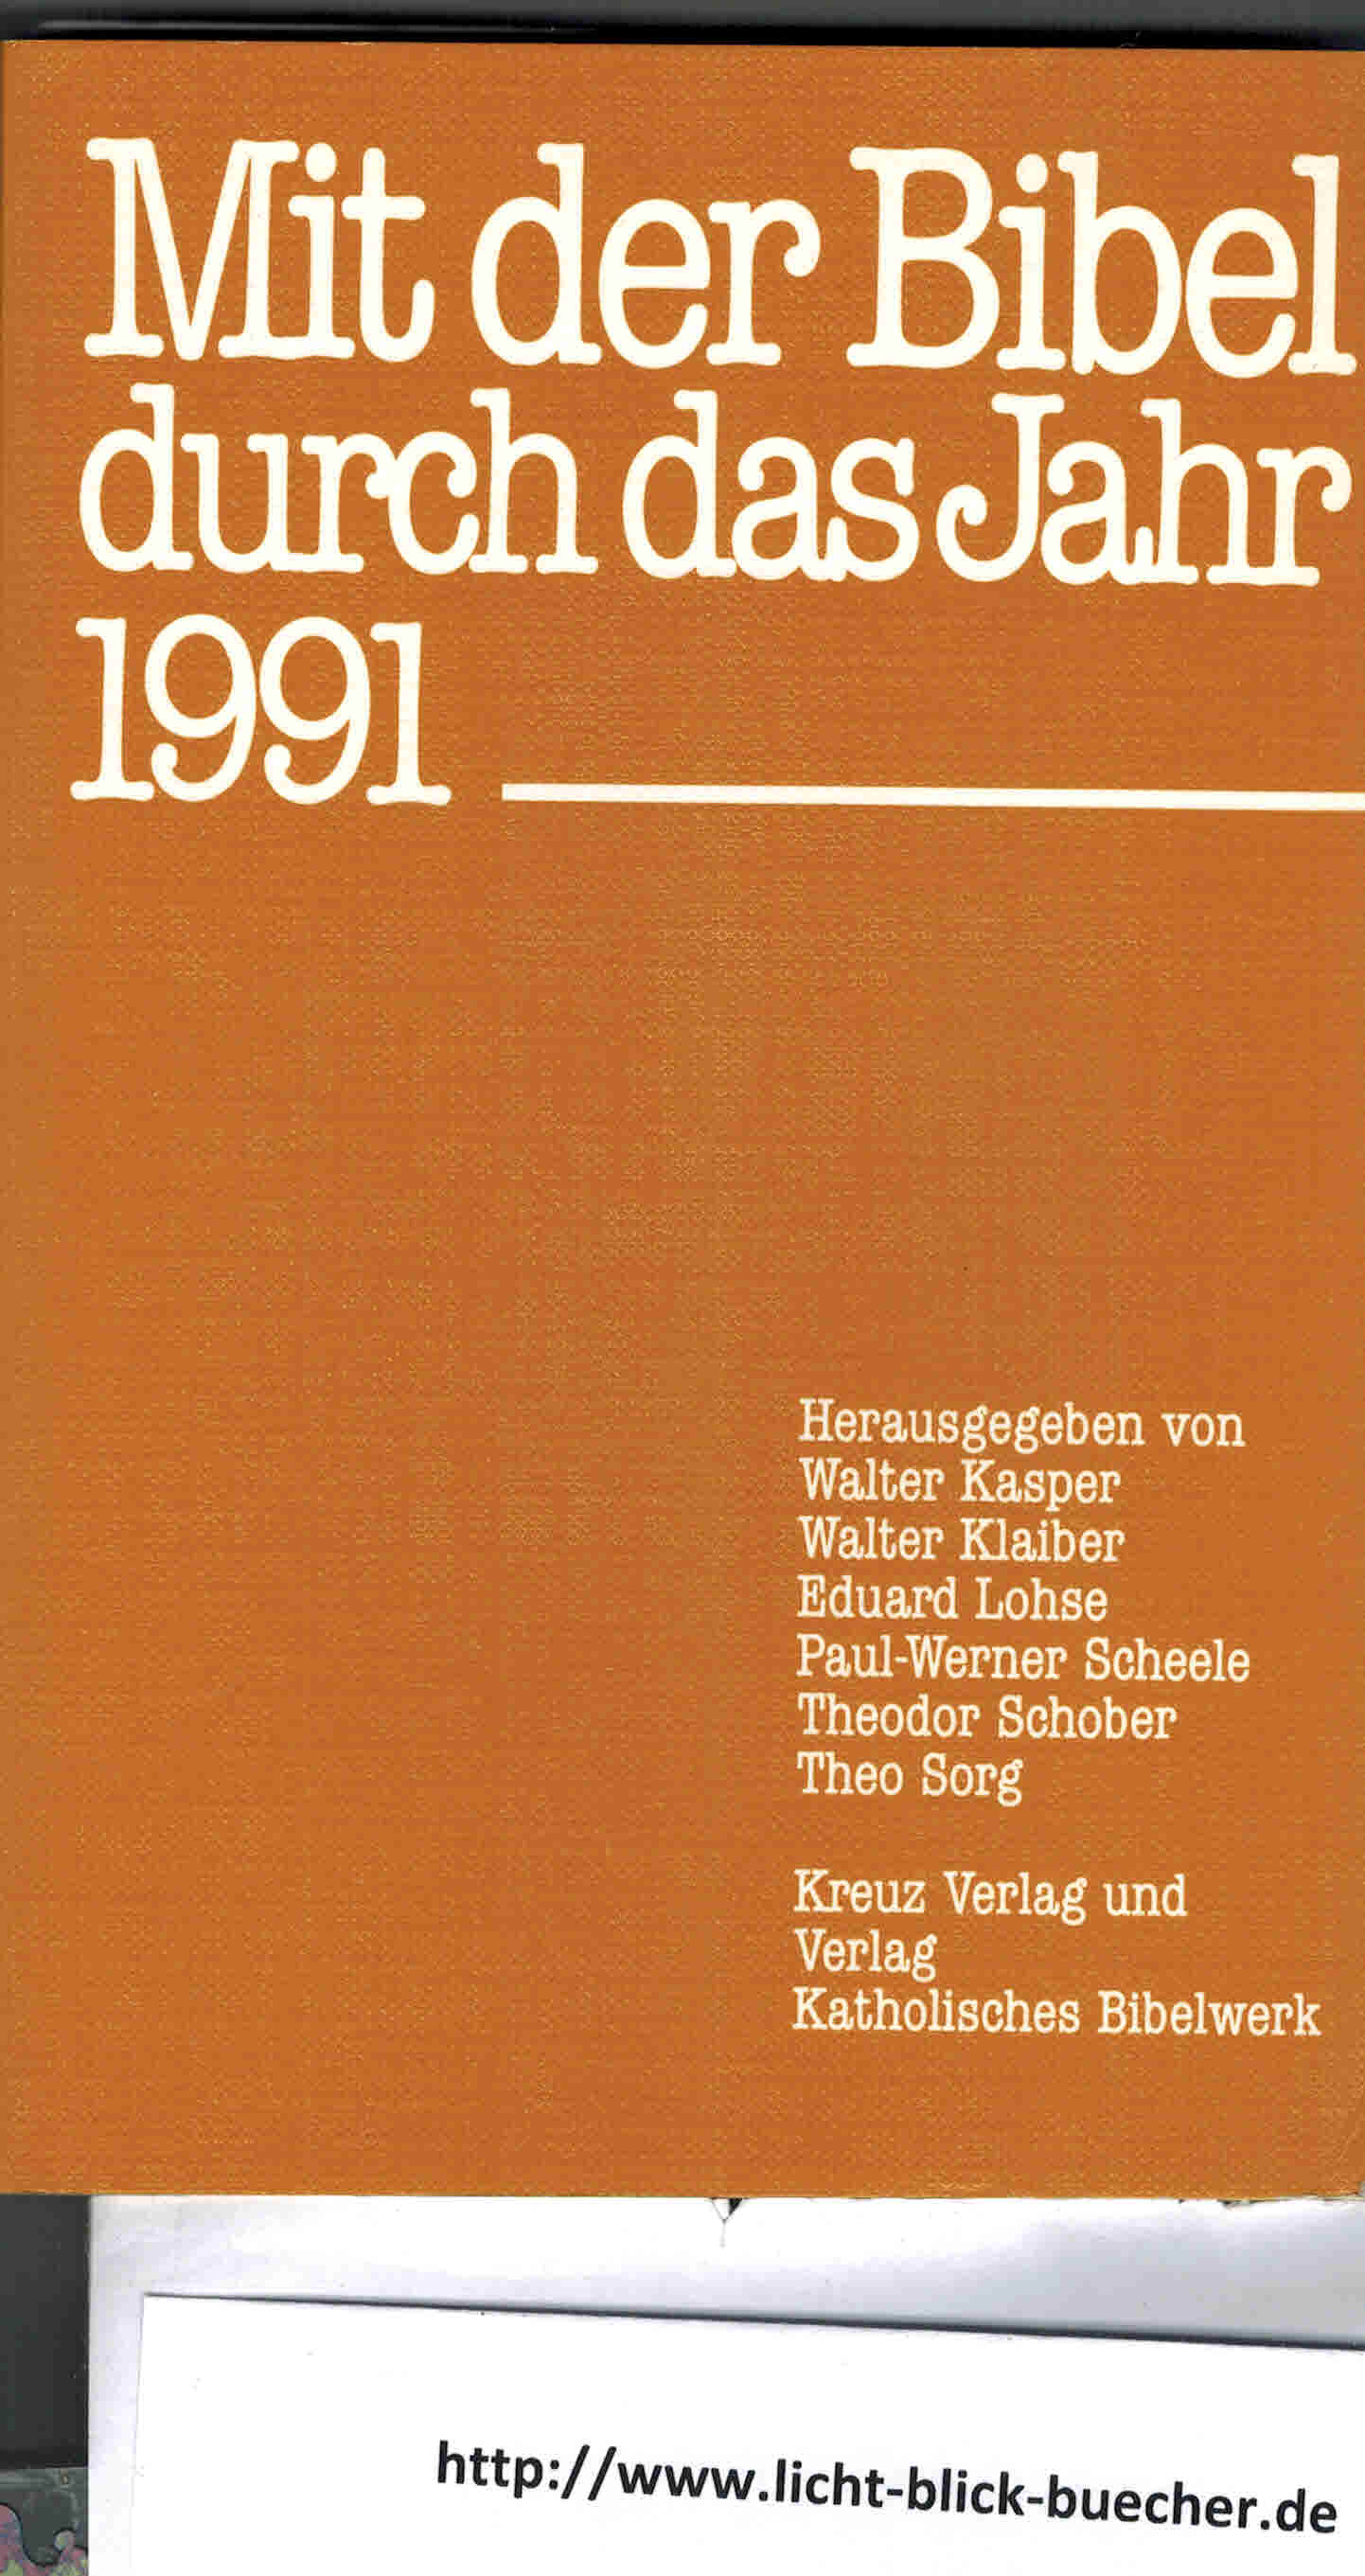 Mit der Bibel durch das Jahr 1991hrsg: Kaspar / Klaiber / Lohse / Scheele / Schober / Sorg